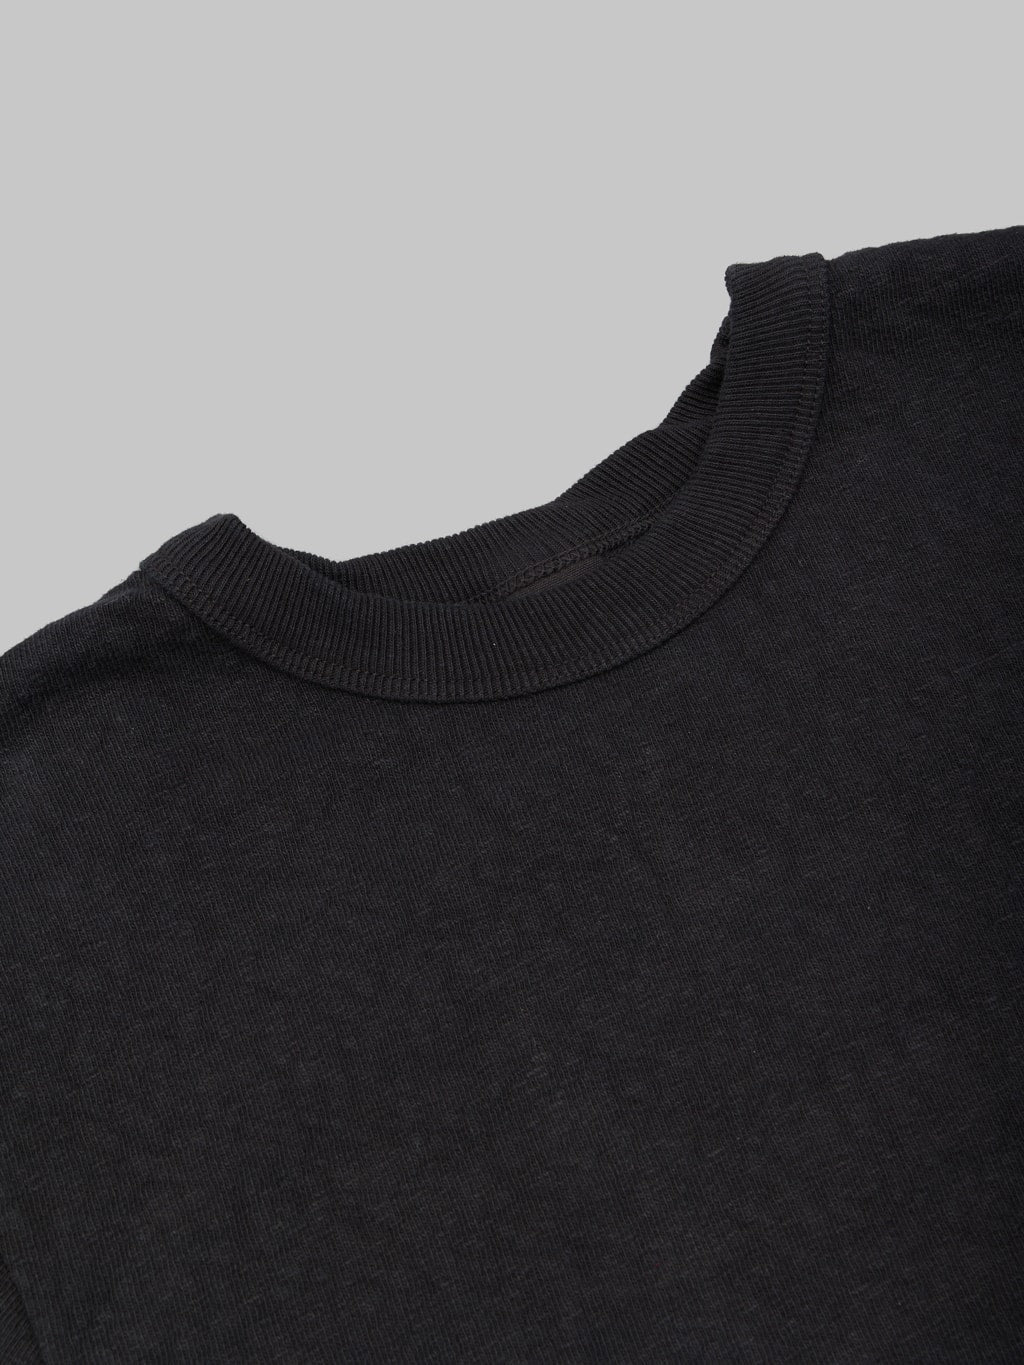 UES No 8 Slub Nep Short Sleeve Tshirt Black reinforced collar